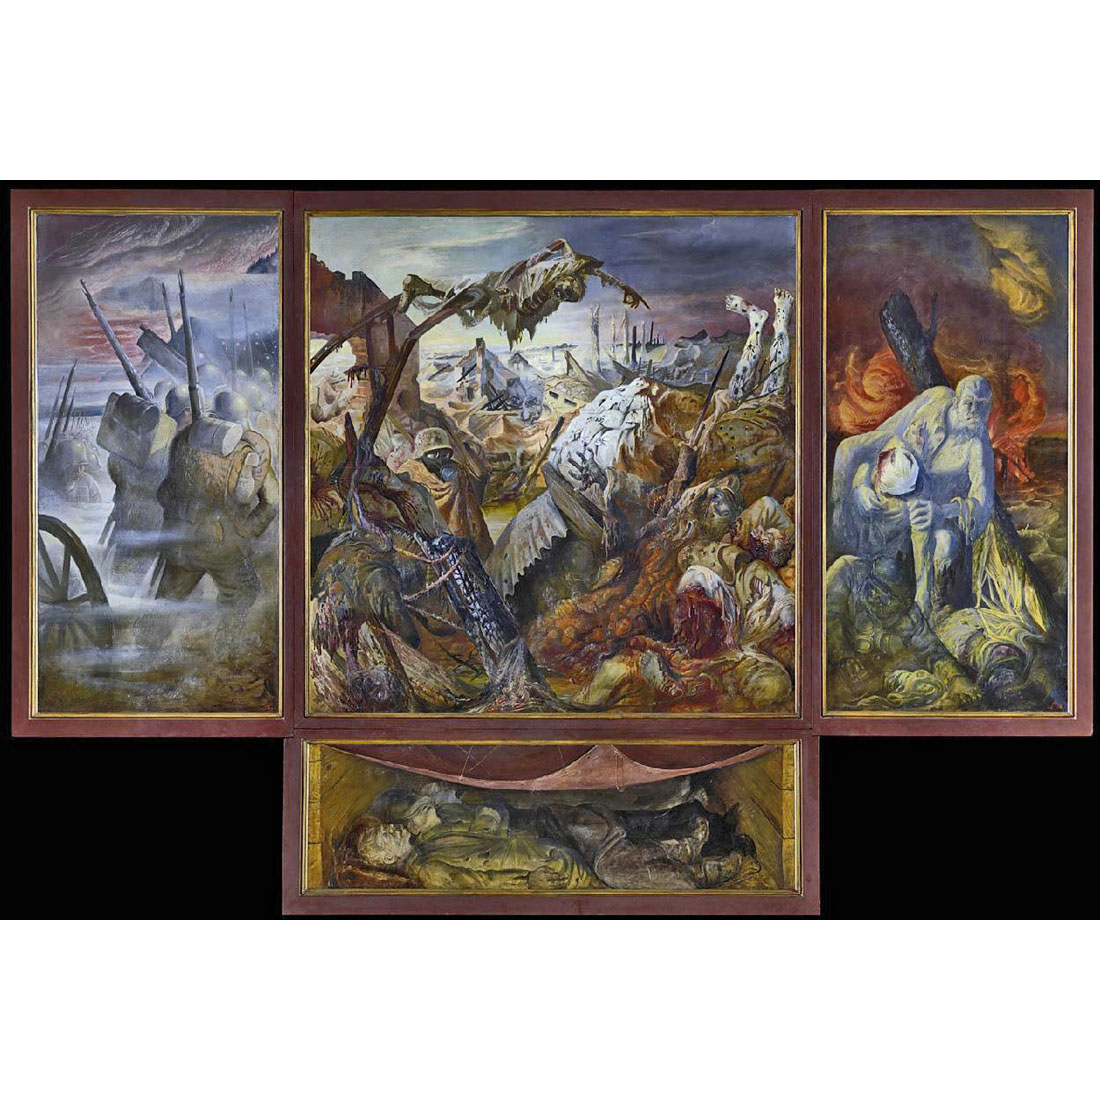 Otto Dix. The War. 1929-1932. Galerie Neue Meister Dresden